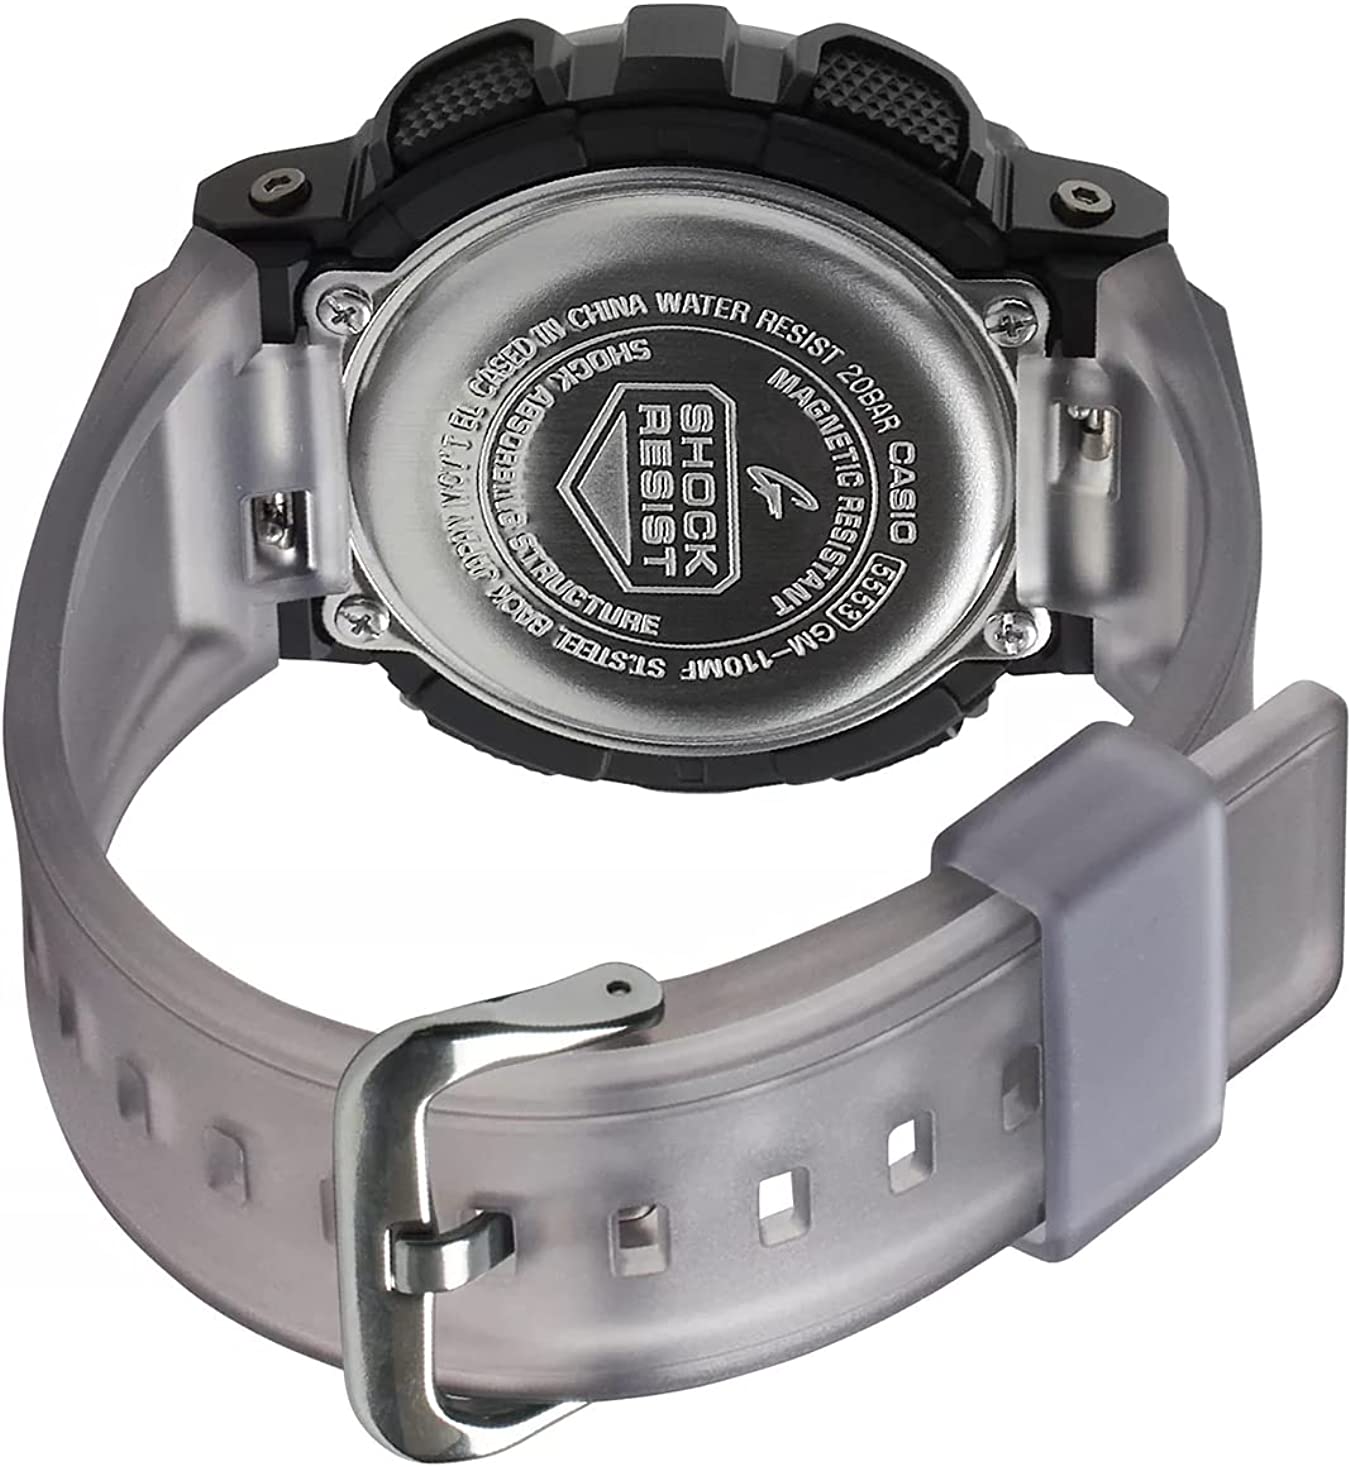 Casio G-Shock Metal Covered Midnight Fog Series Analog-Digital Grey Watch GM110MF-1ADR